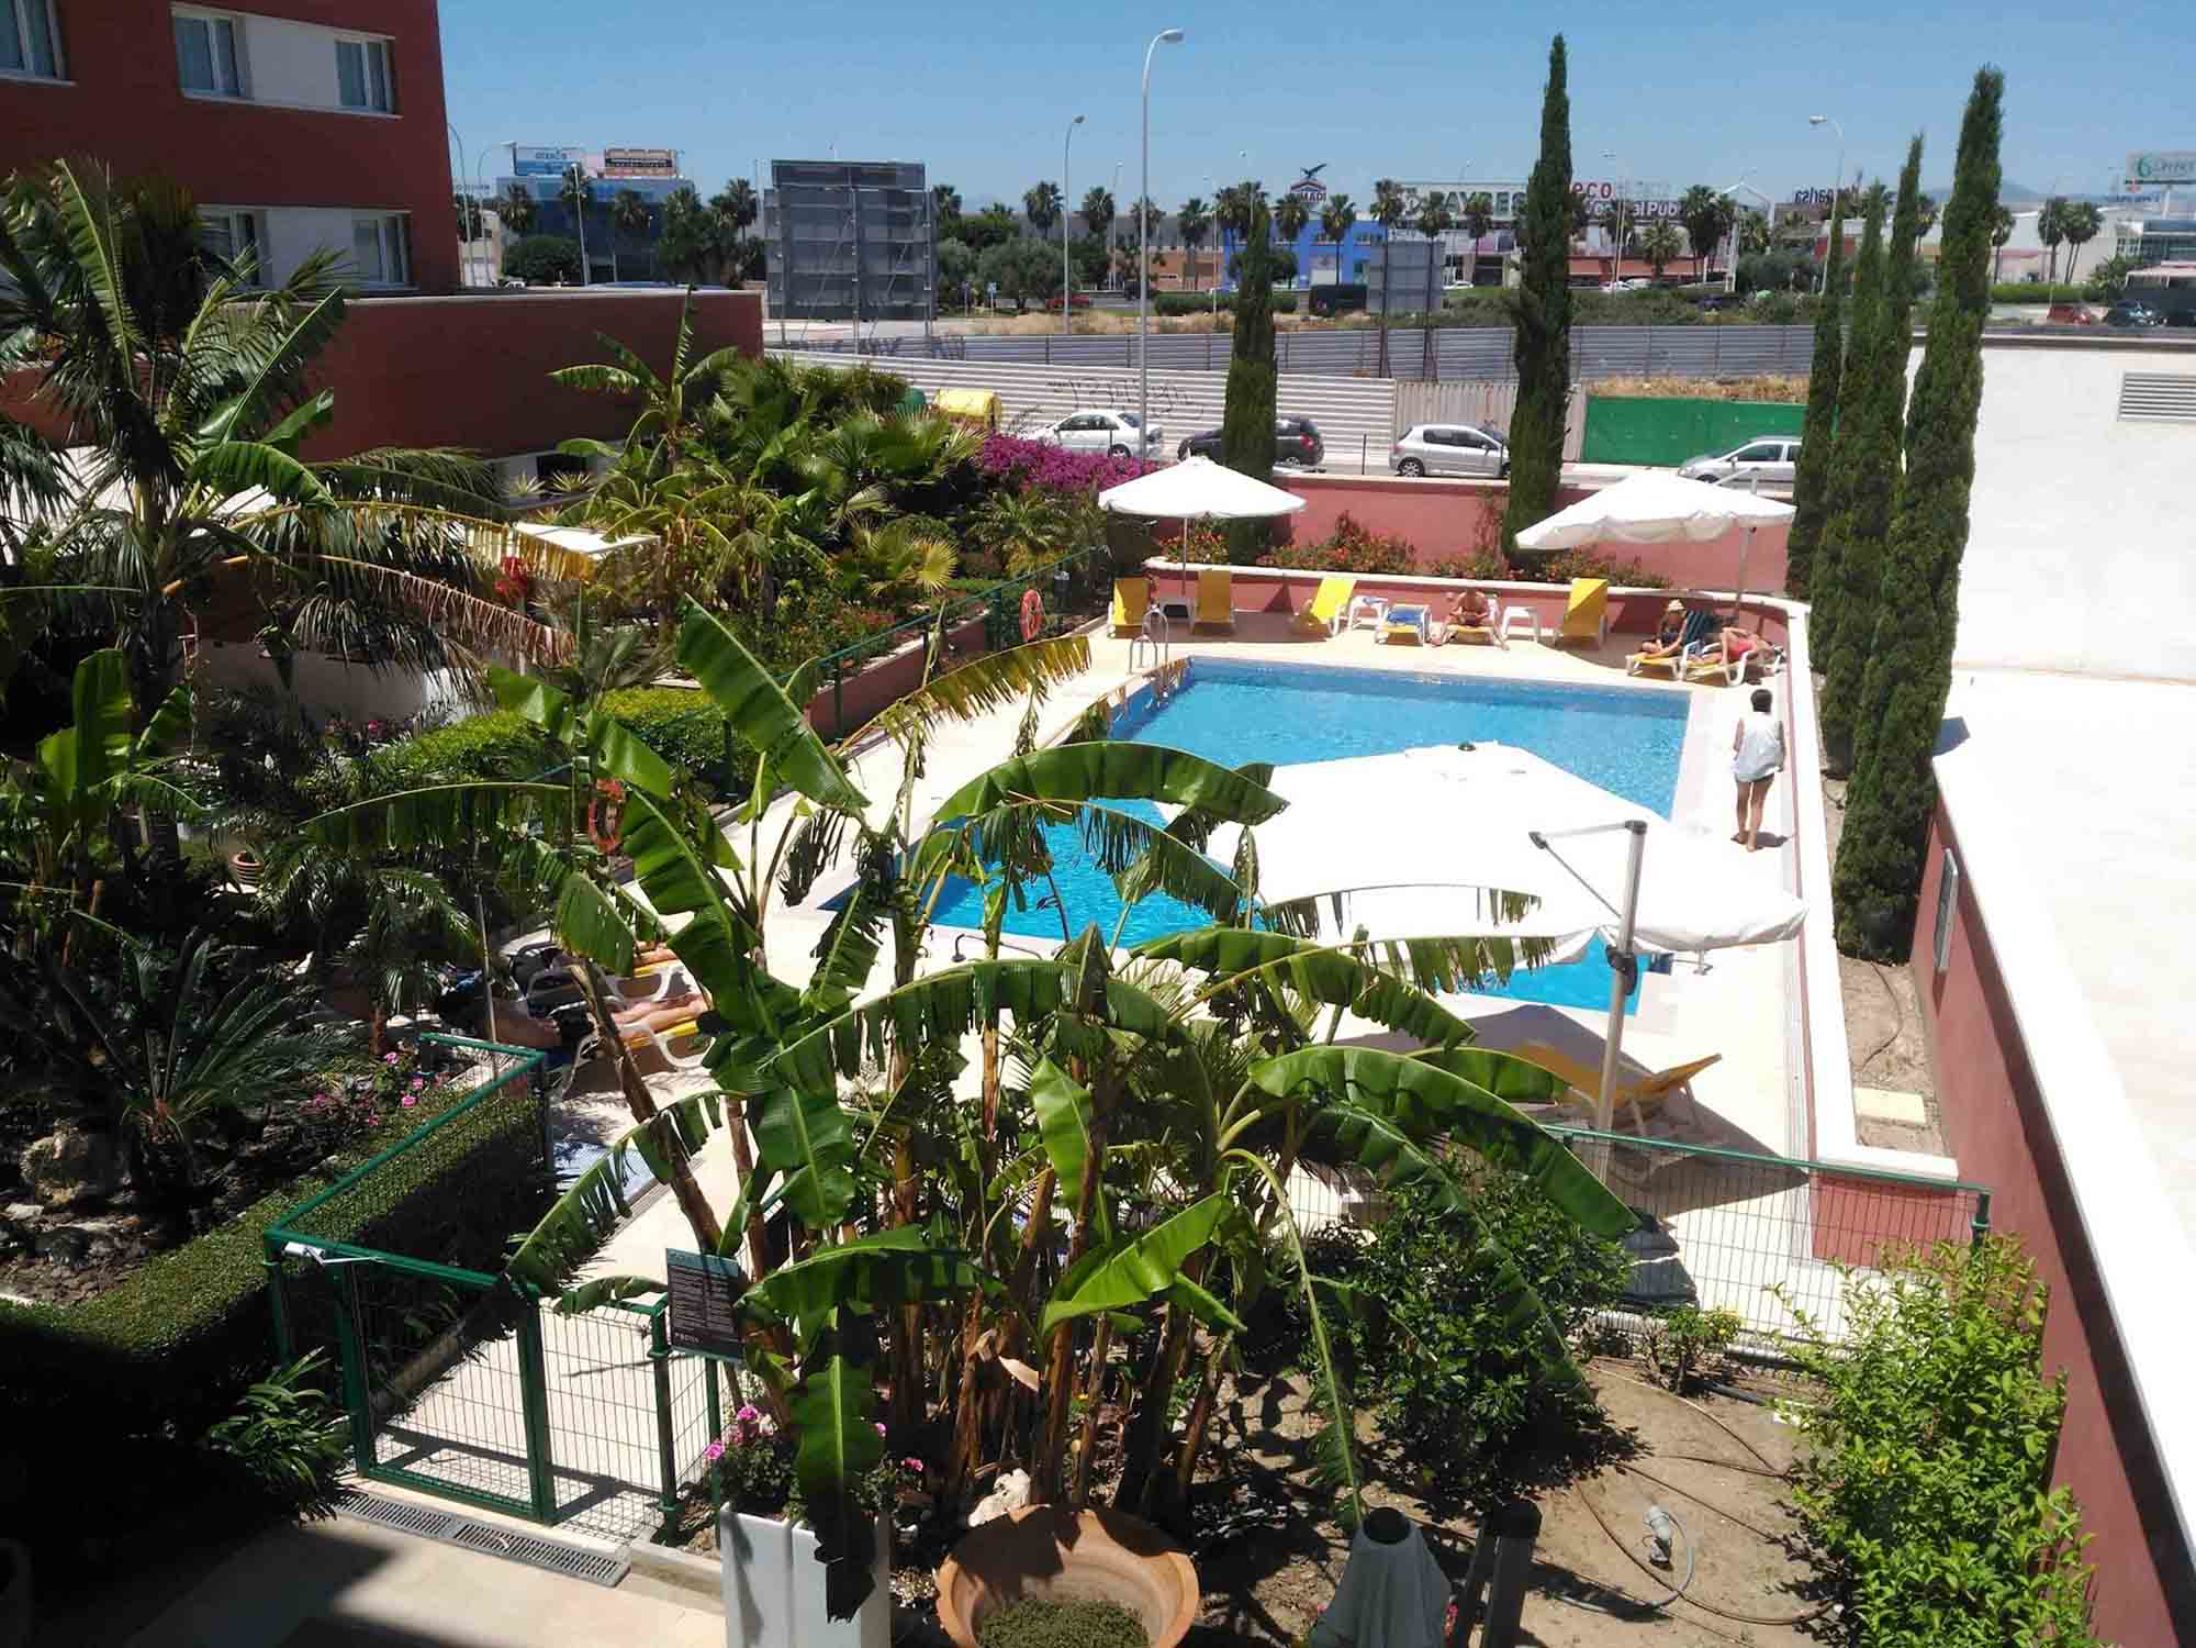 Hilton Garden Inn - Best Hotels in Malaga